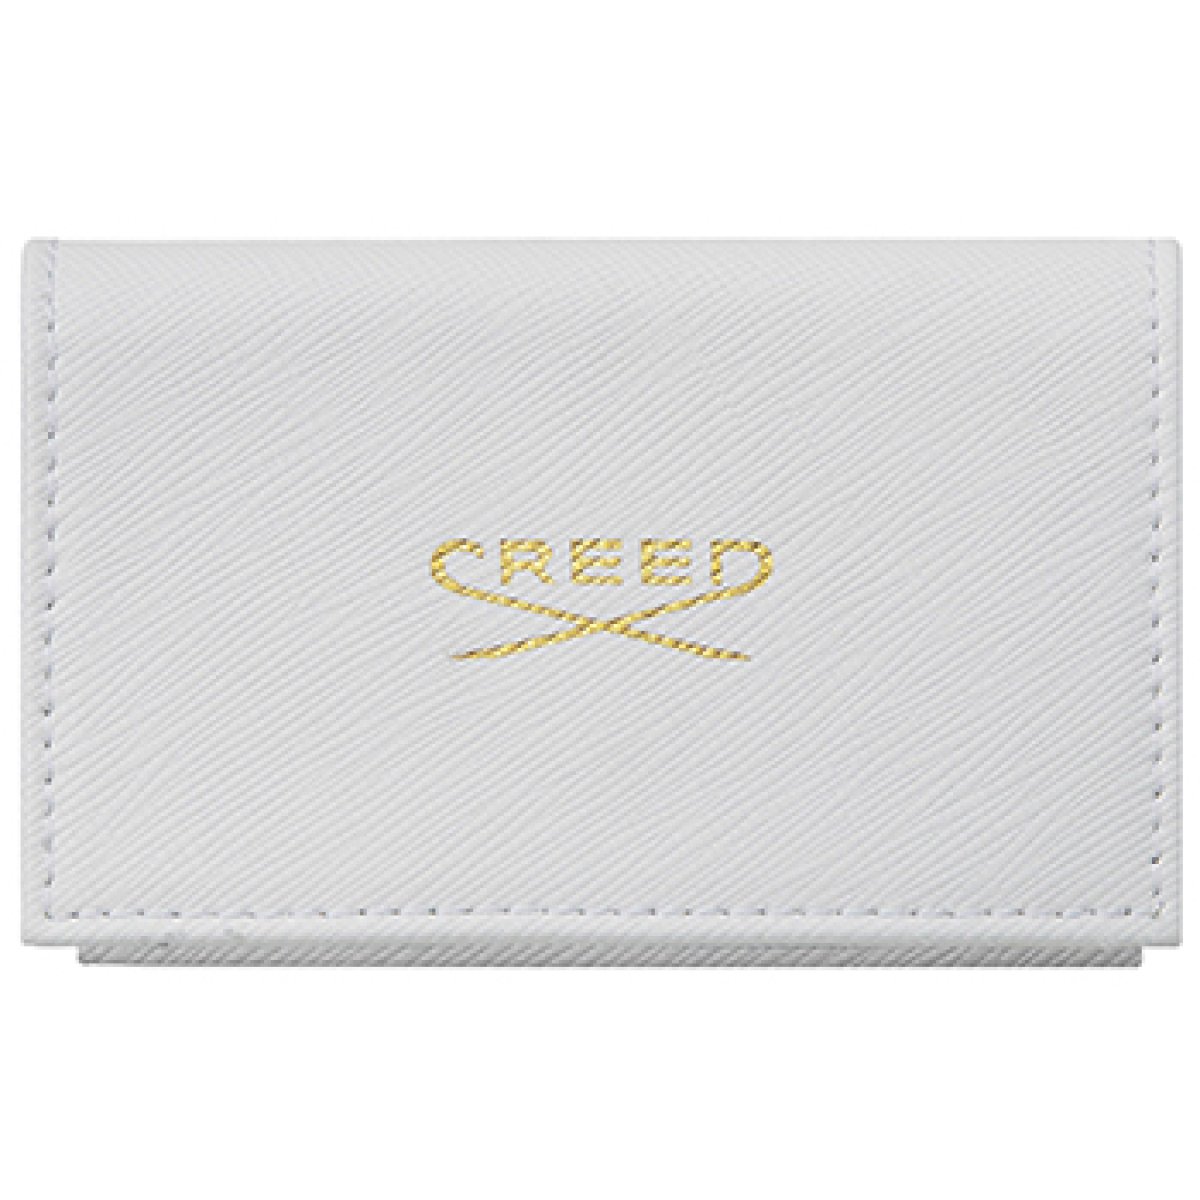 Creed Creed - EDP 8 x 1,7 ml